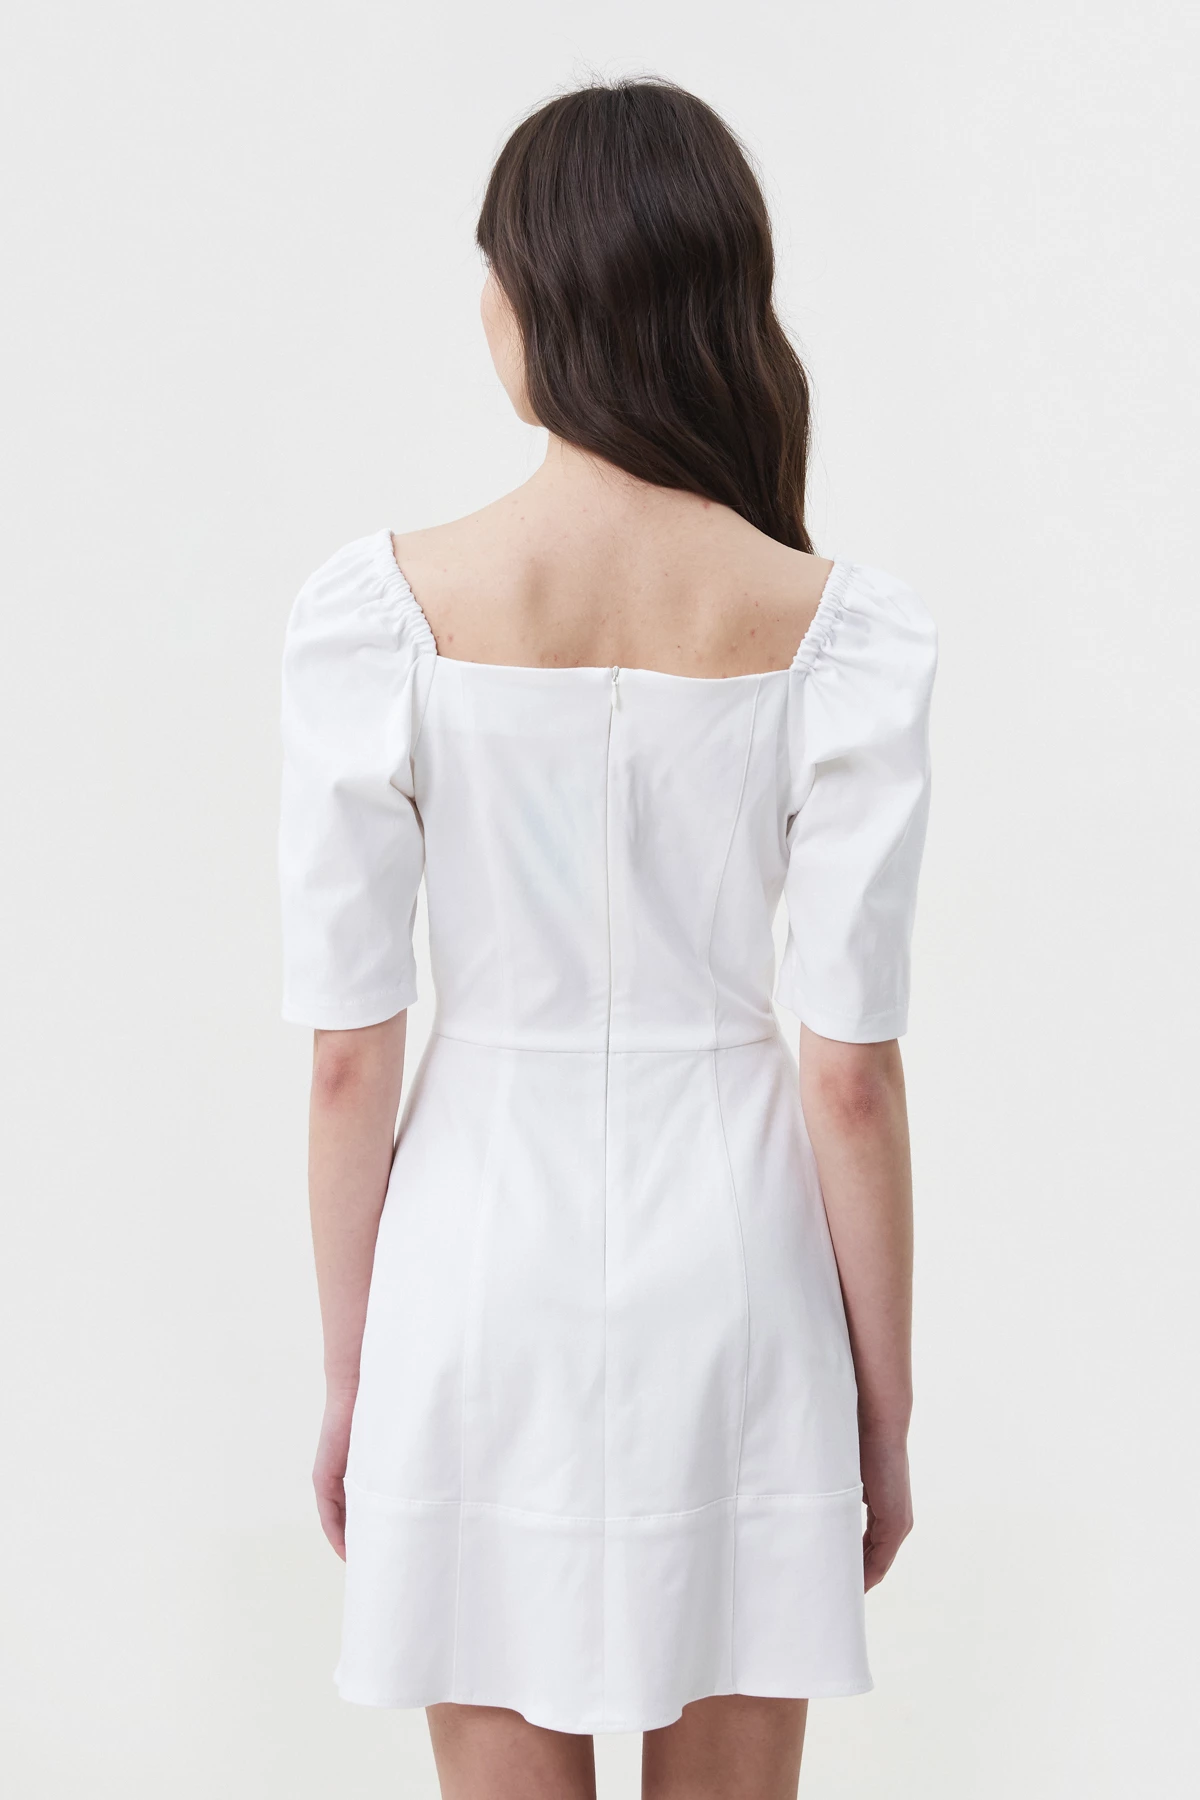 White short cotton dress, photo 5